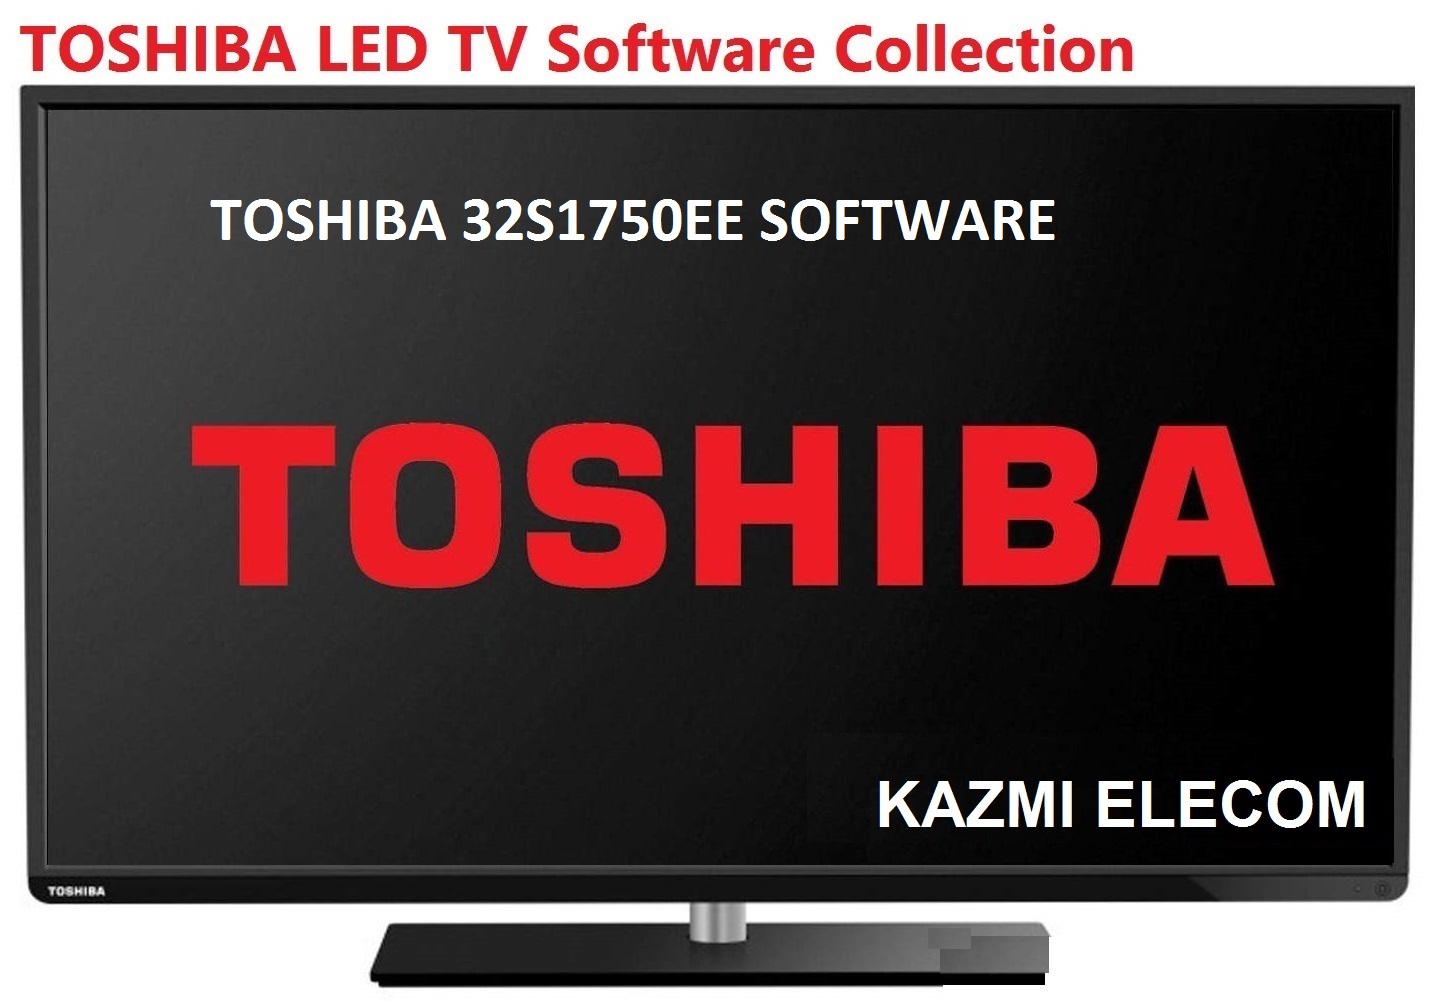 Toshiba 32S1750Ee